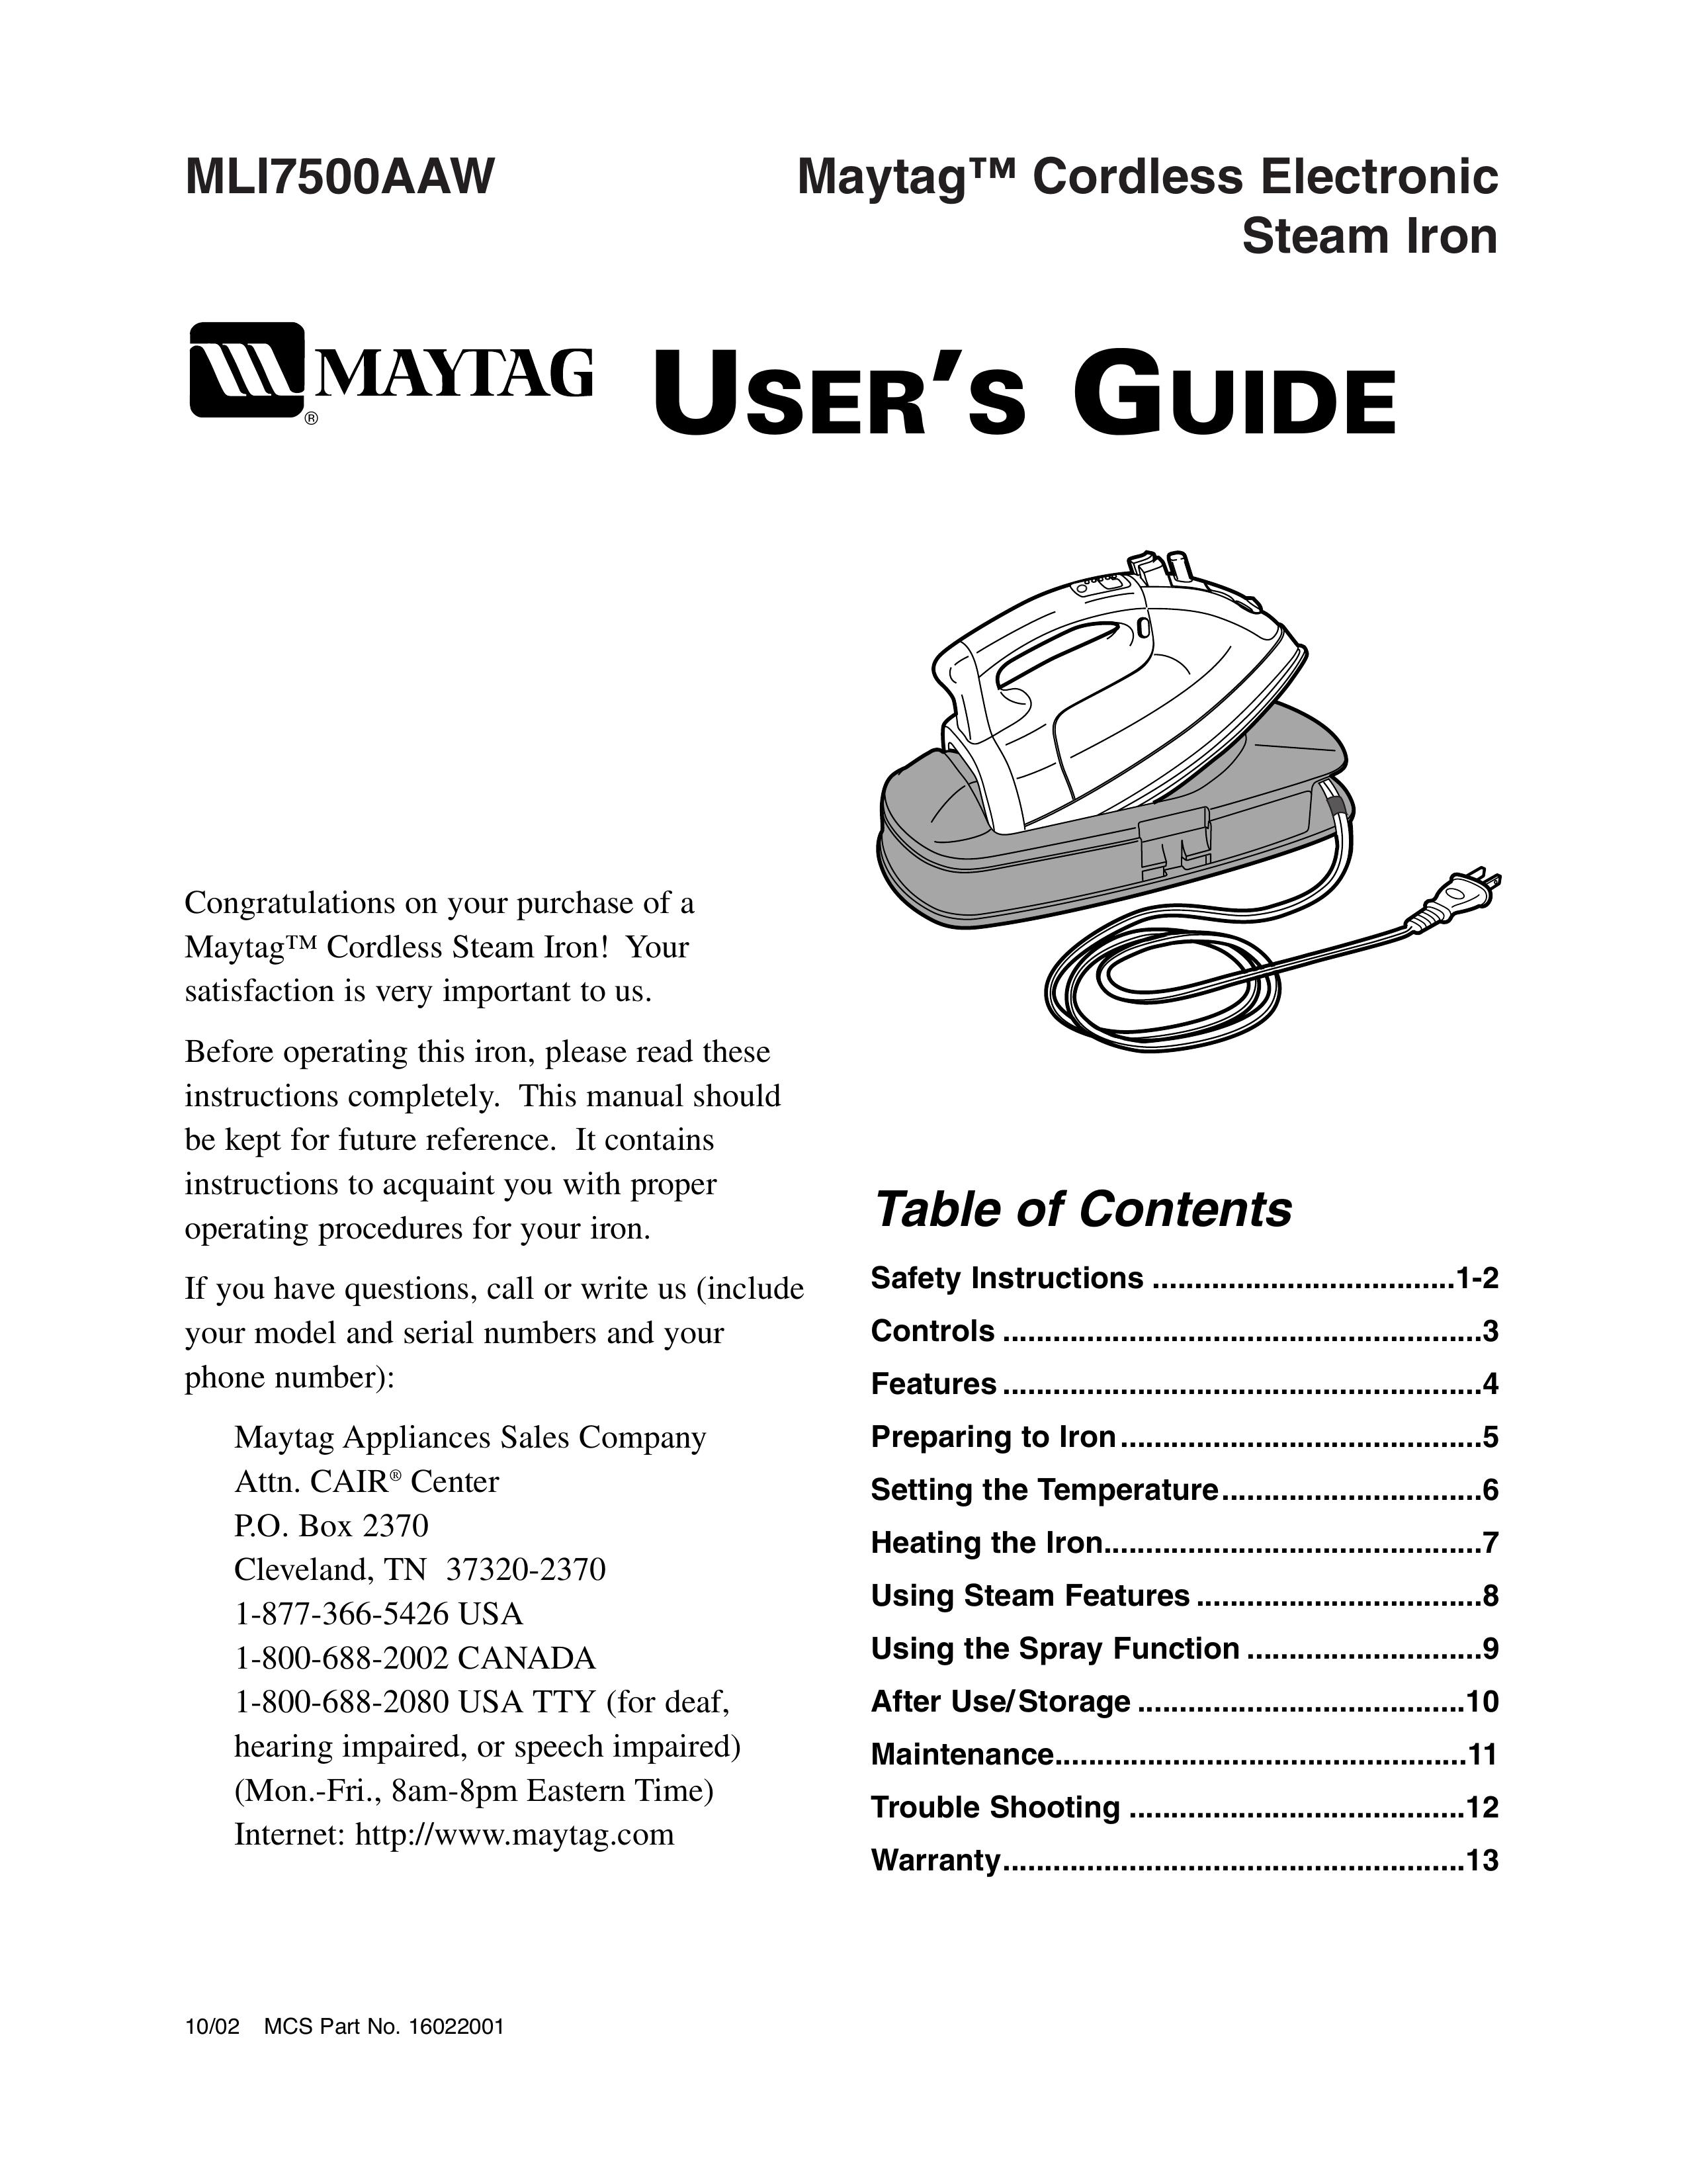 Maytag MLI7500AAW Iron User Manual